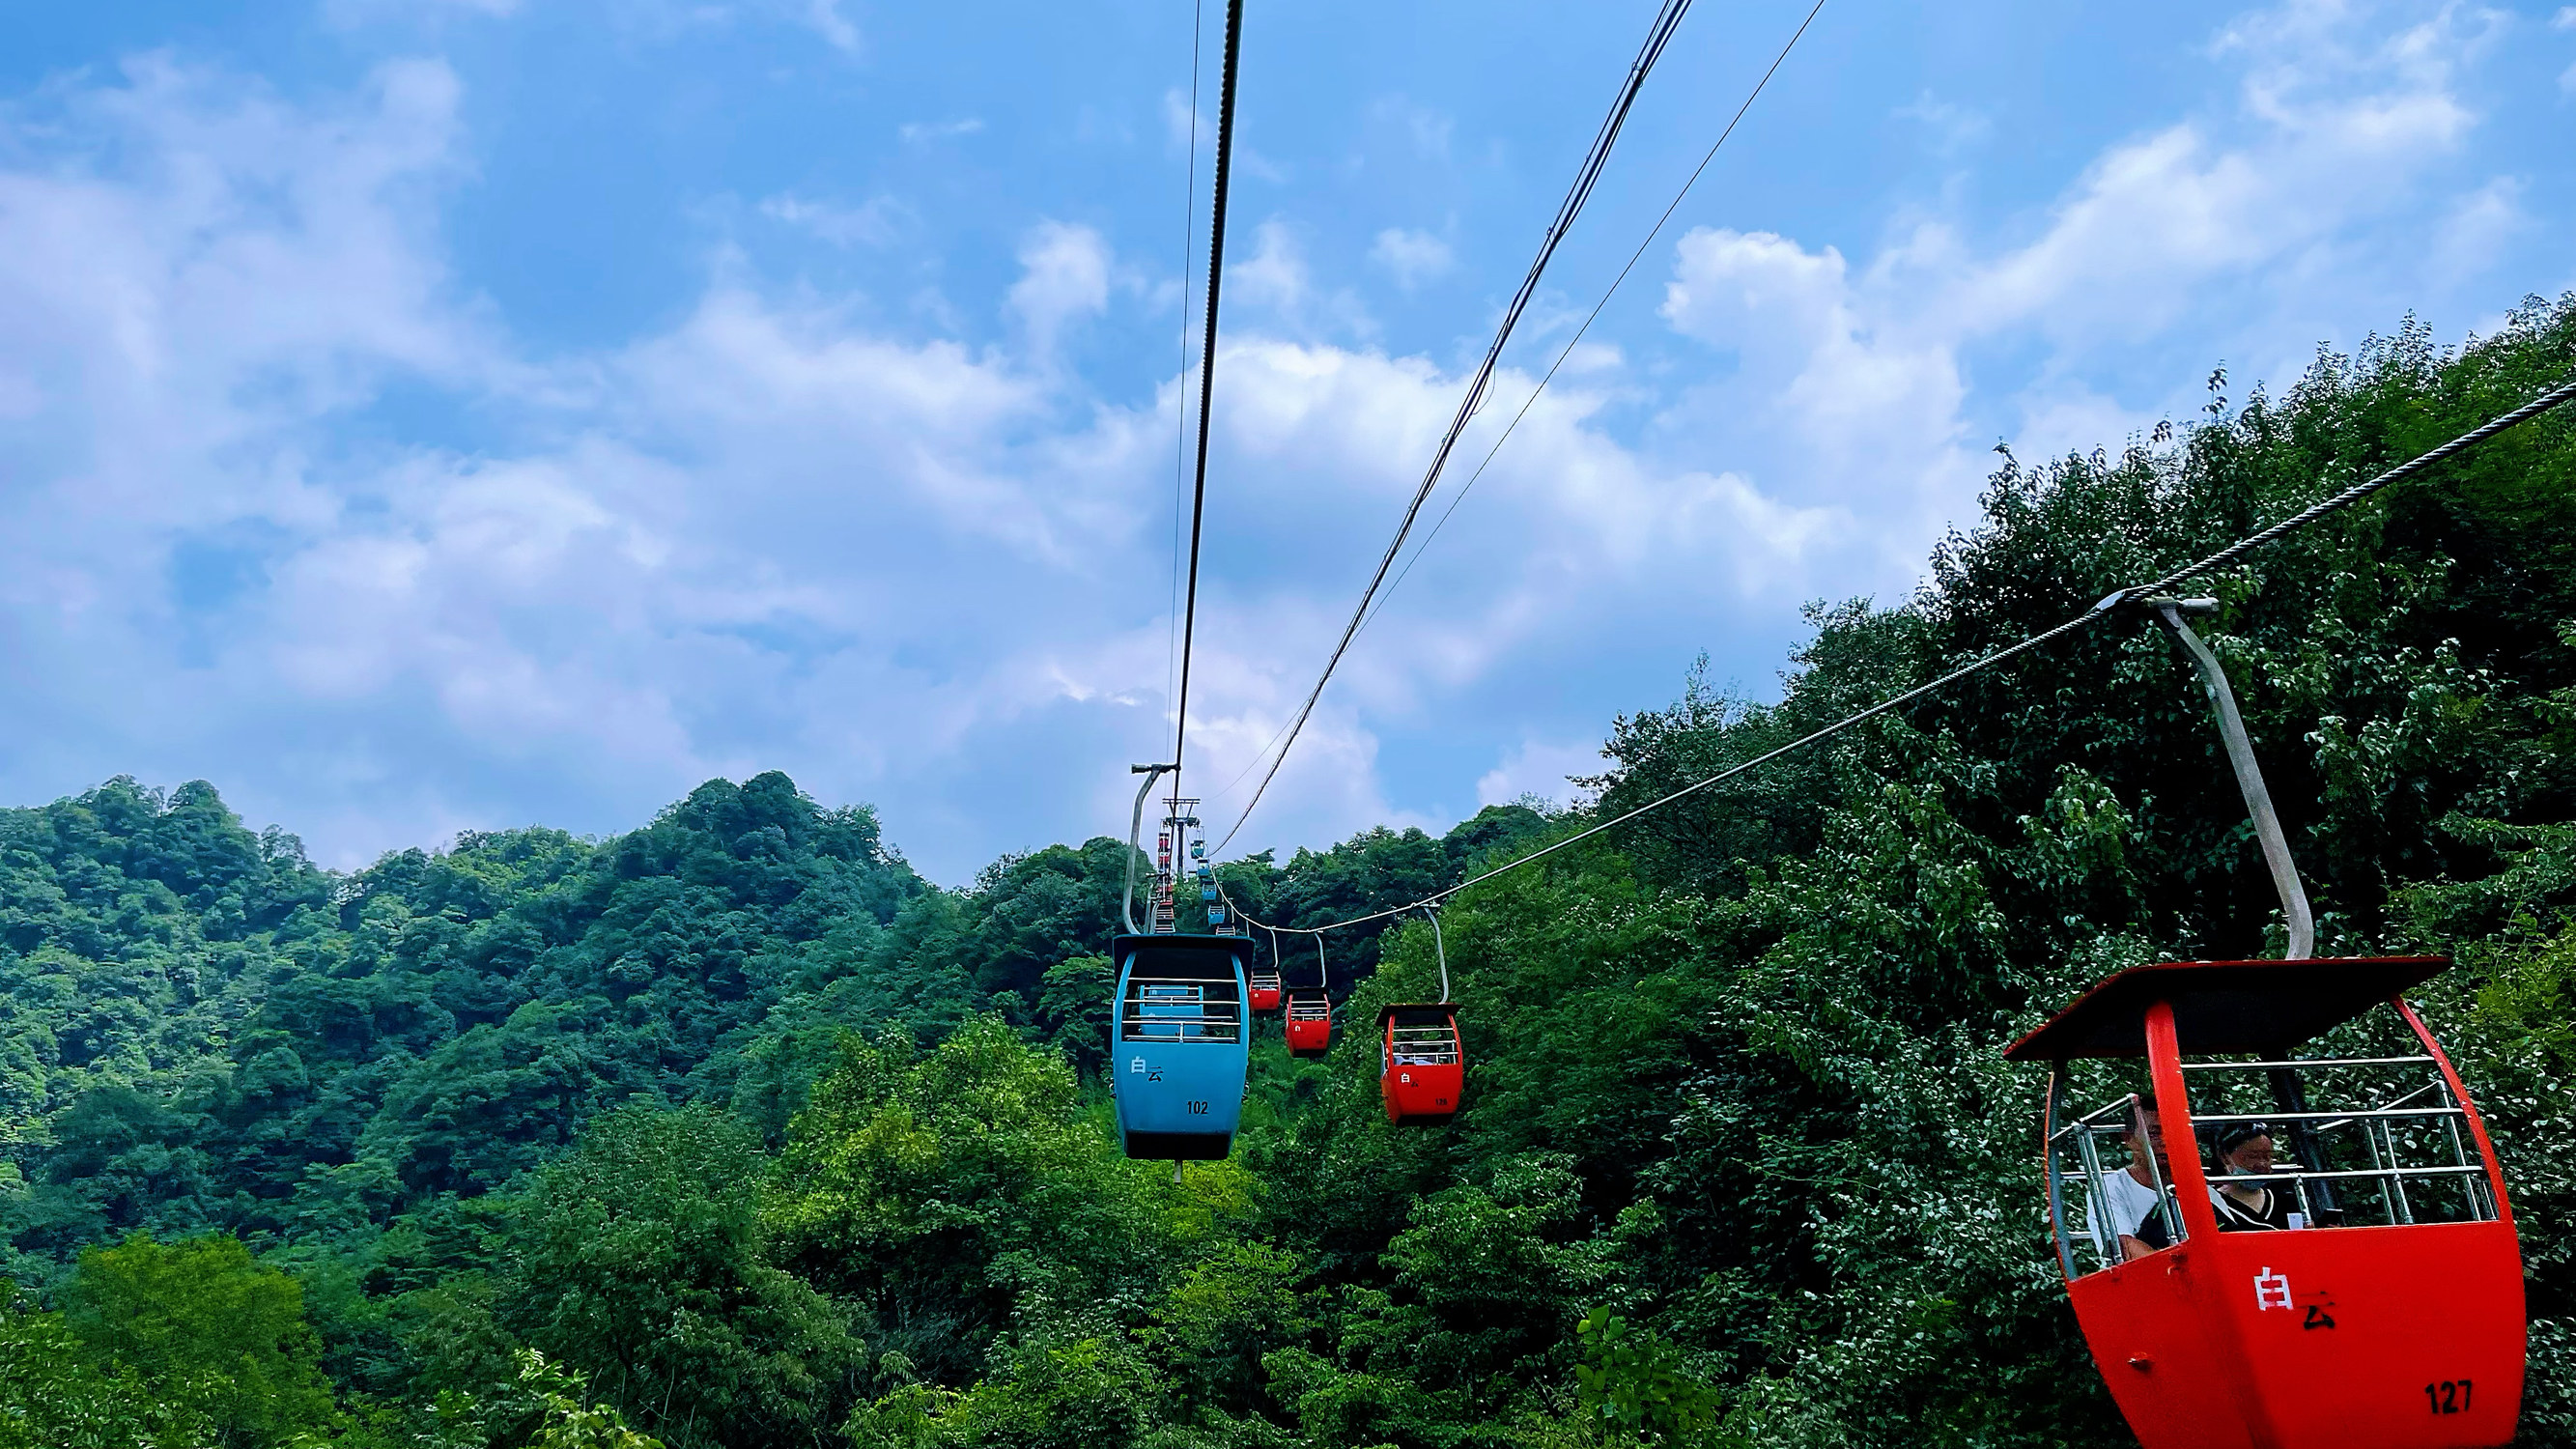 青城后山的缆车坐着太舒服了，两边的风景也很舒服